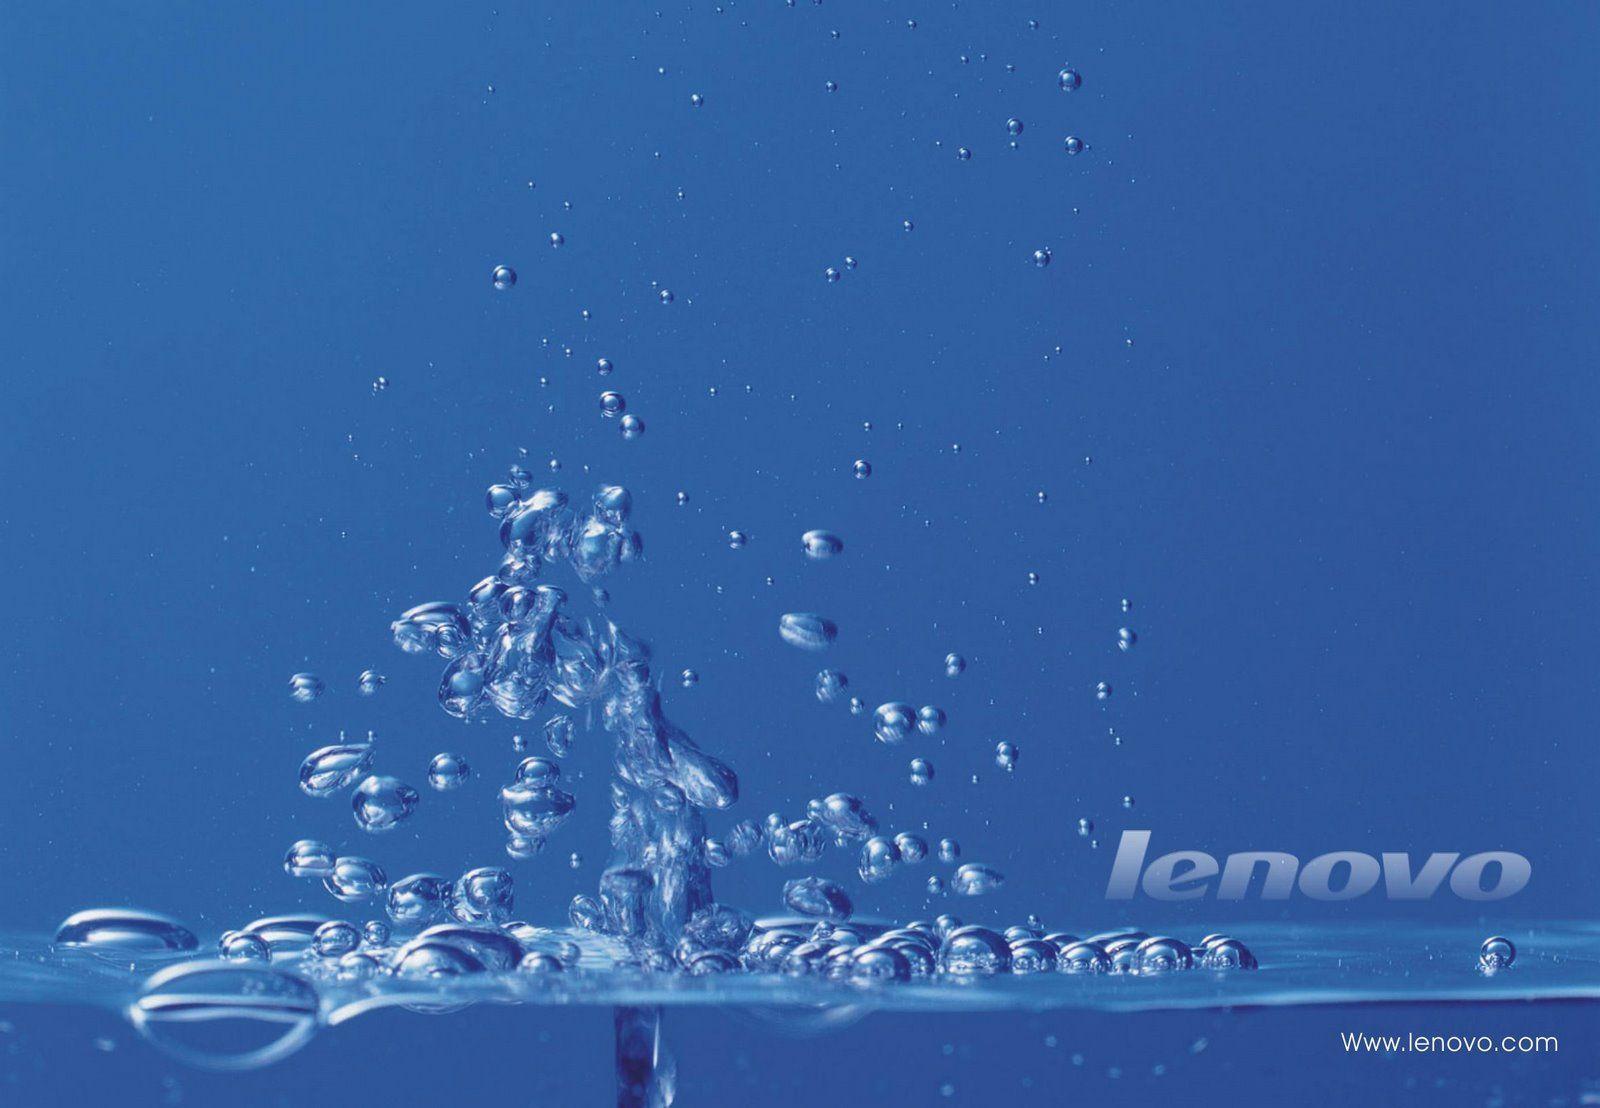 V.74 Lenovo, Full HD Image